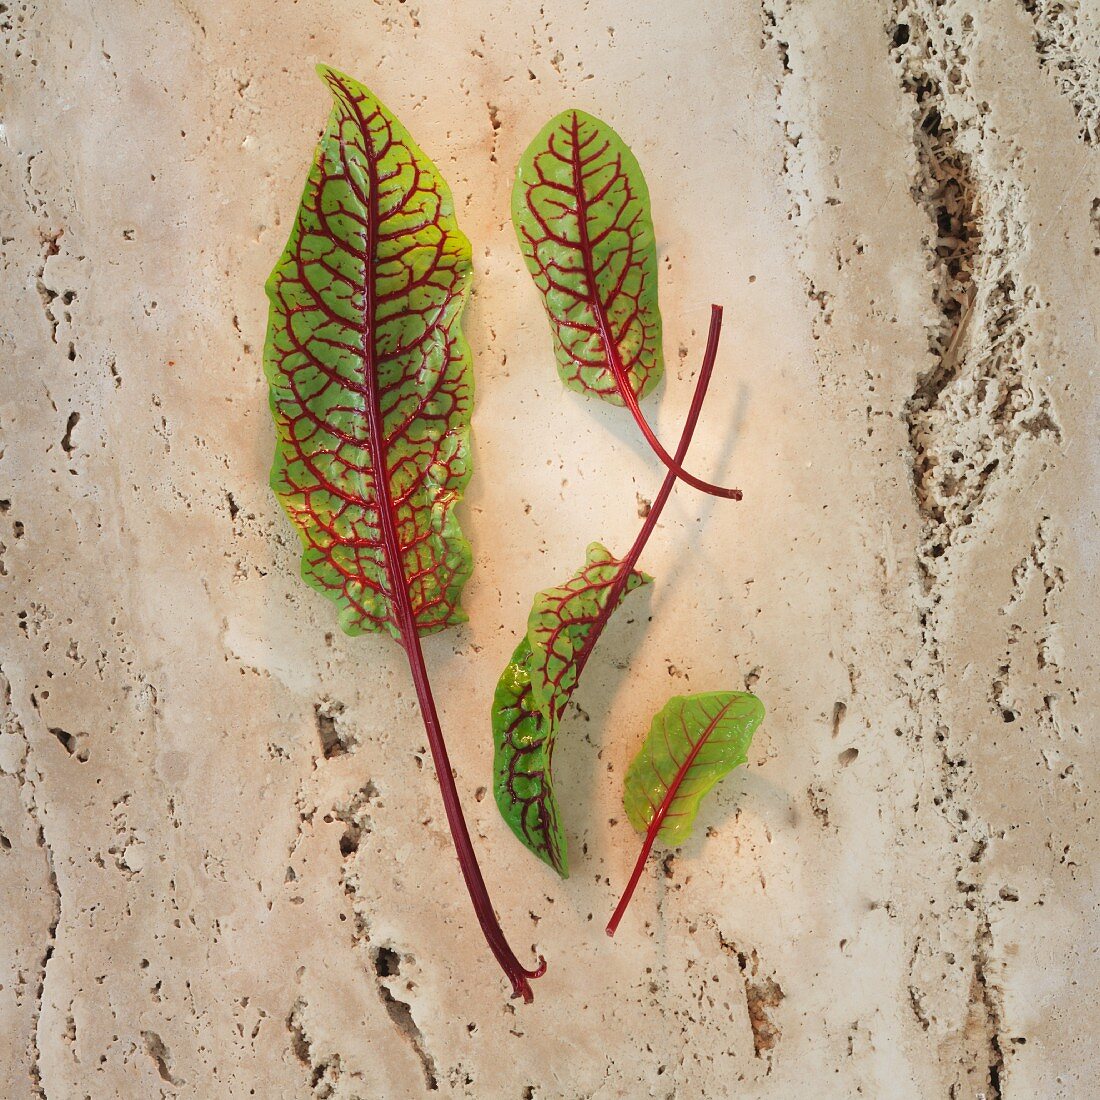 Red sorrel leaves